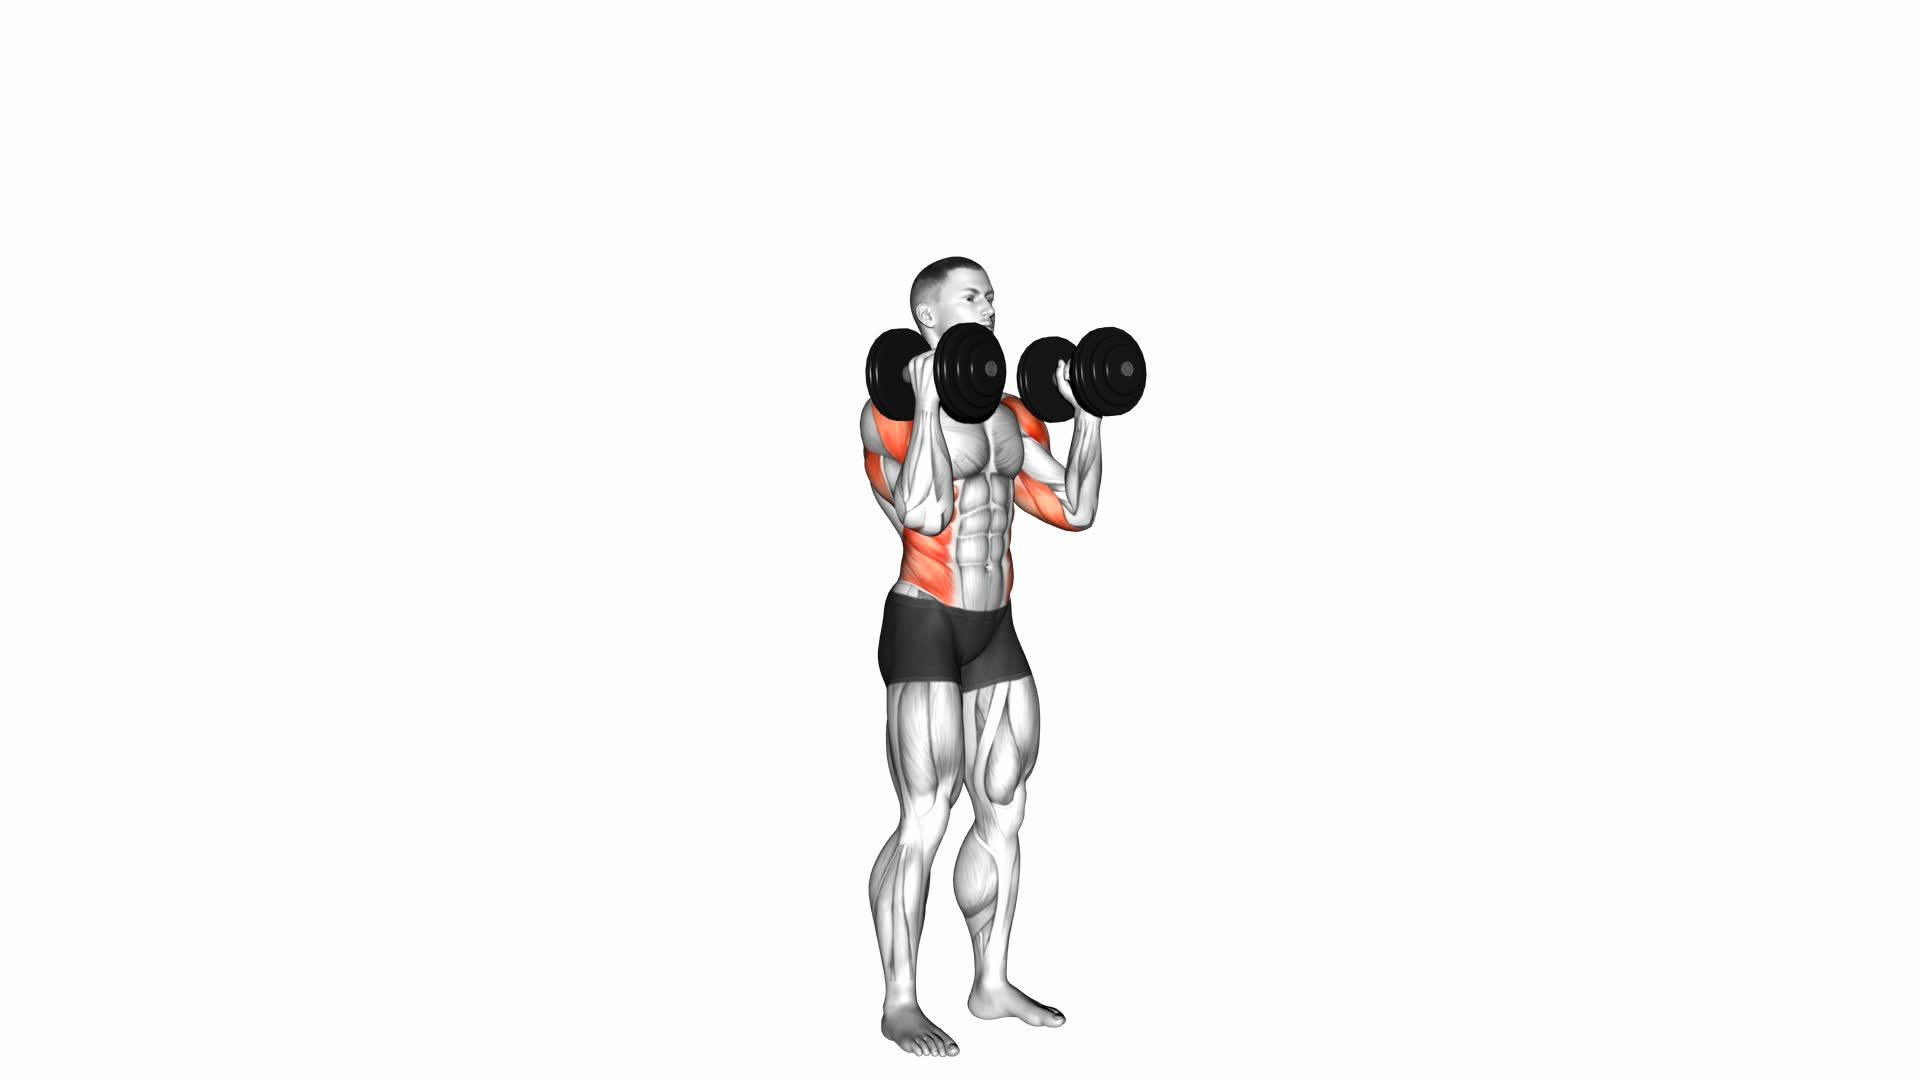 Dumbbell Alternate Side Press - Video Exercise Guide & Tips